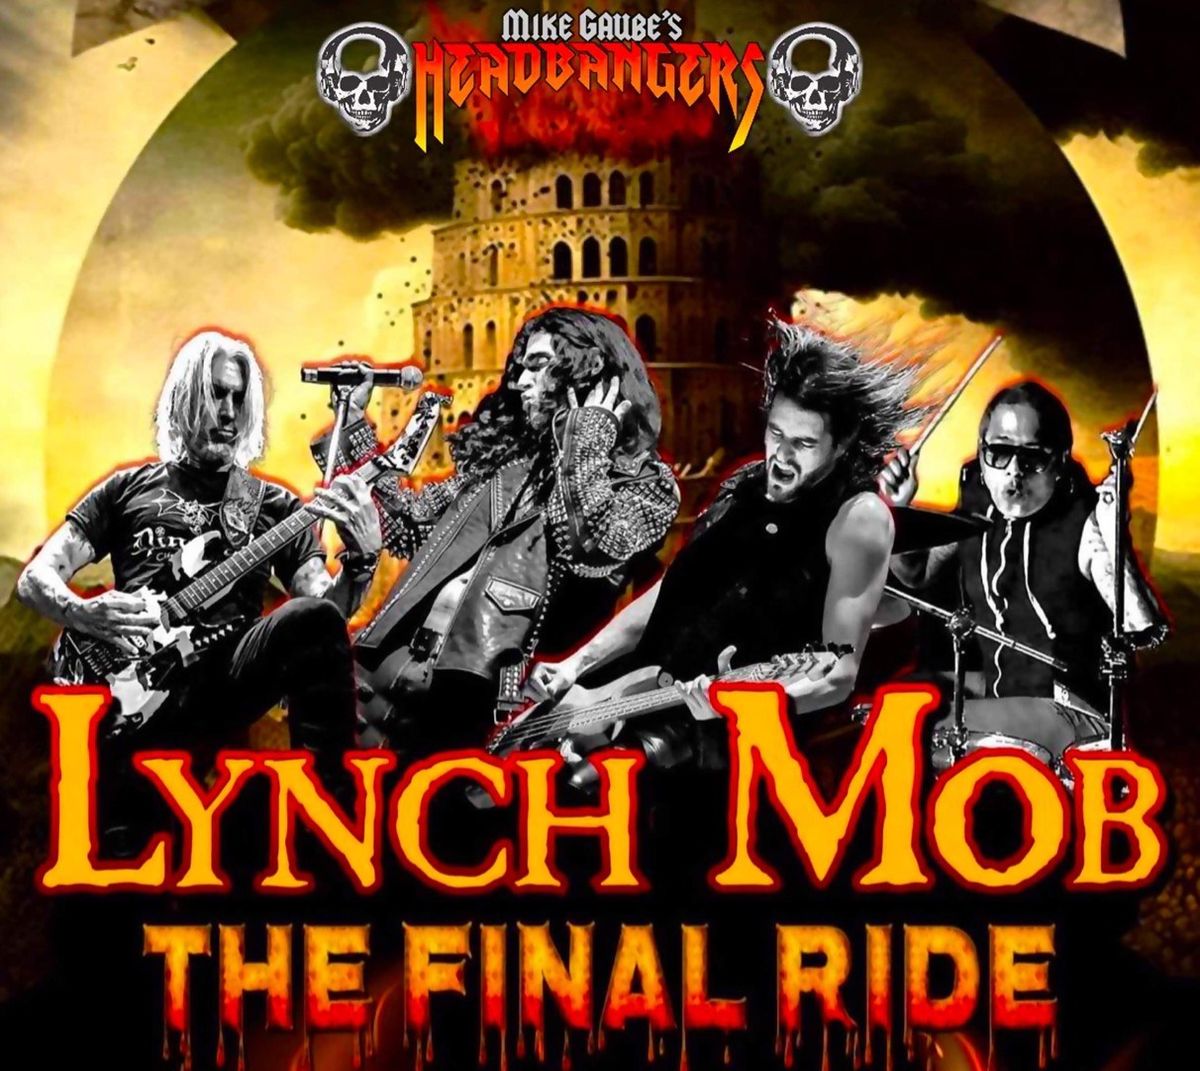 LYNCH MOB "THE FINAL RIDE" TOUR